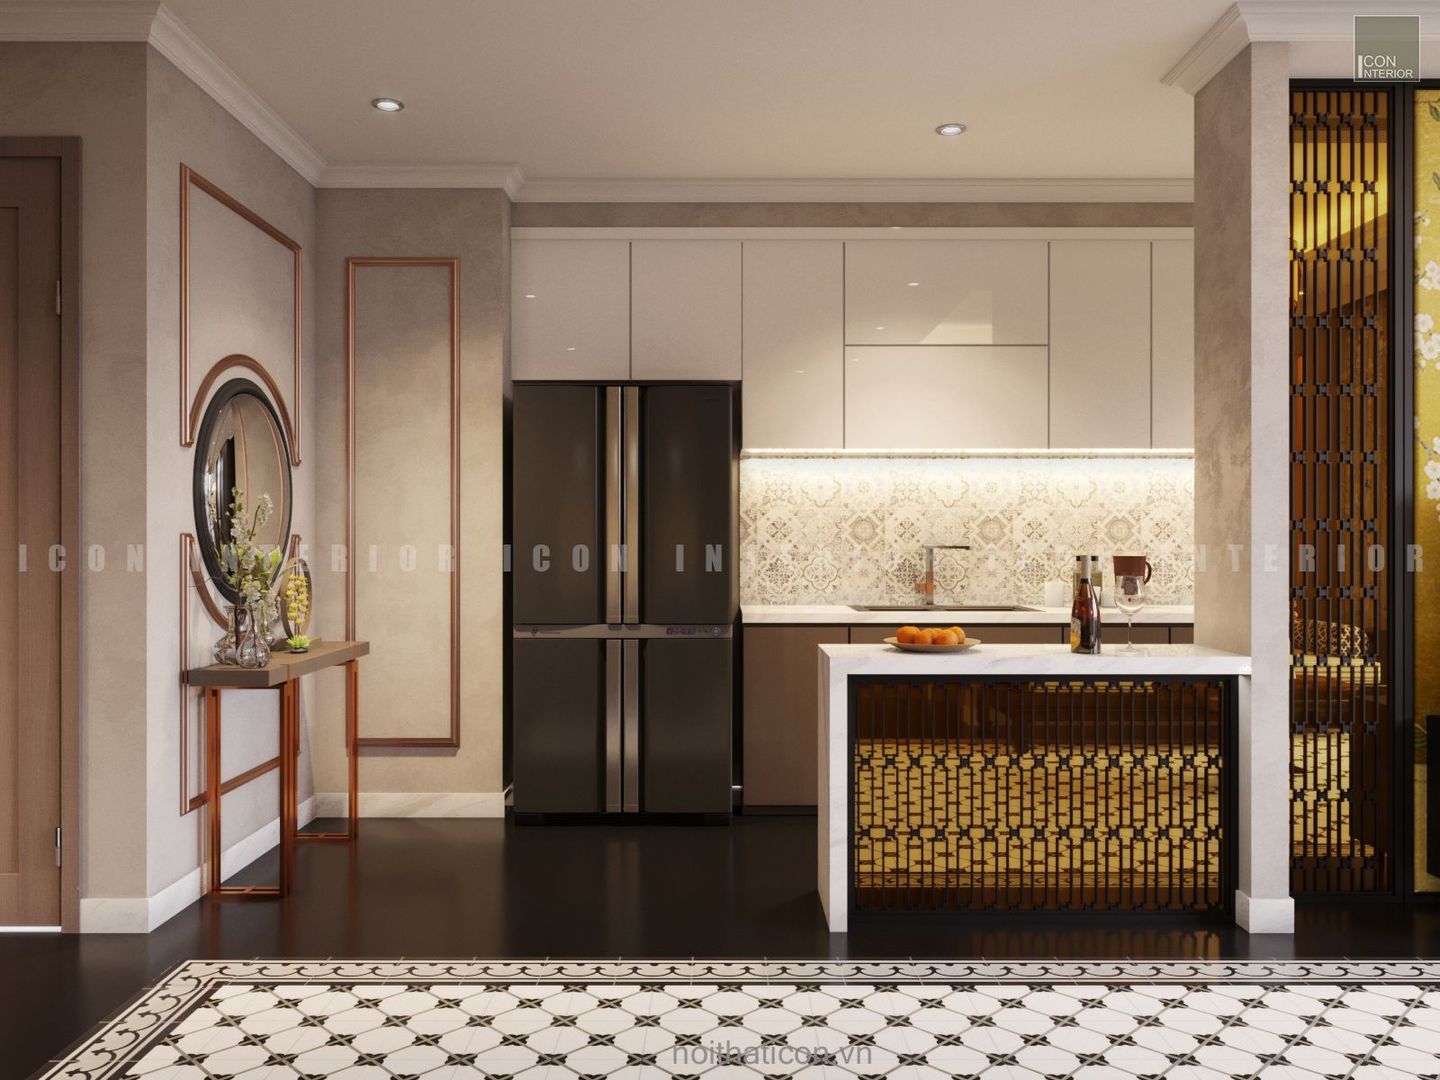 Nội thất căn hộ Vinhomes Central Park thiết kế theo phong cách Đông Dương, ICON INTERIOR ICON INTERIOR مطبخ